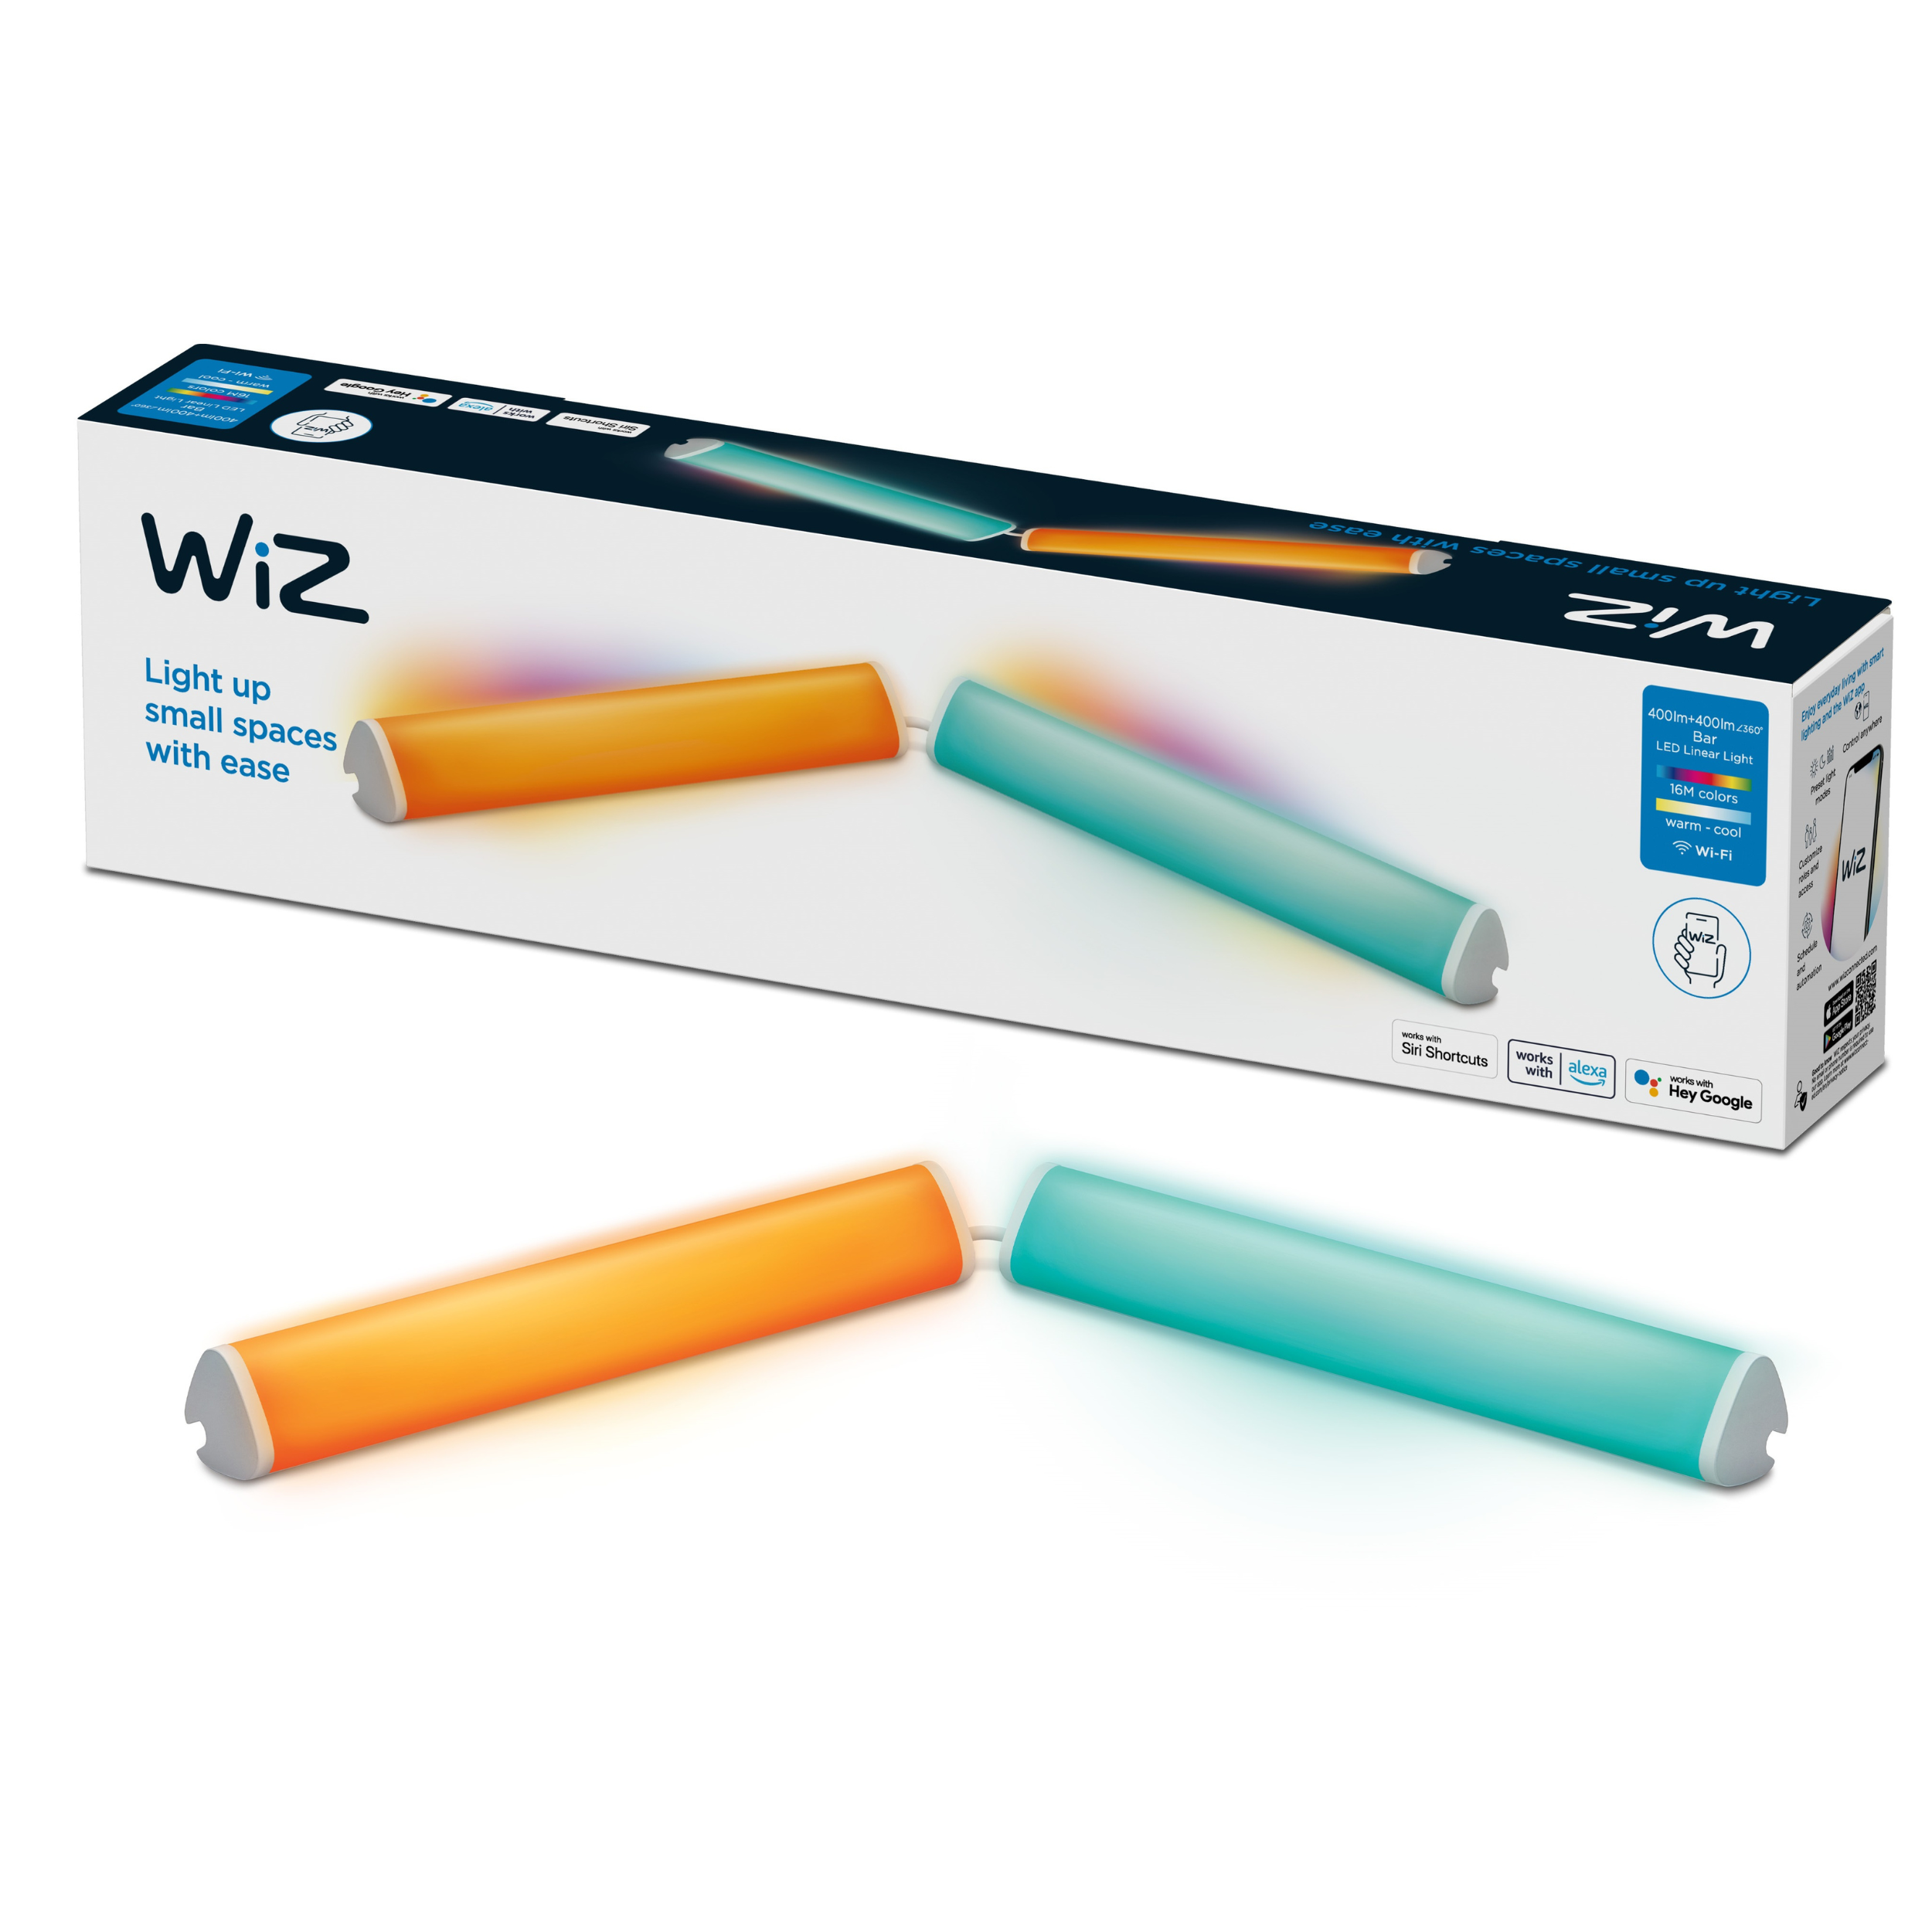 WiZ - Set de 2 Barras de luz led blanca y color Wi-Fi, con tecnología SpaceSense Usb-C